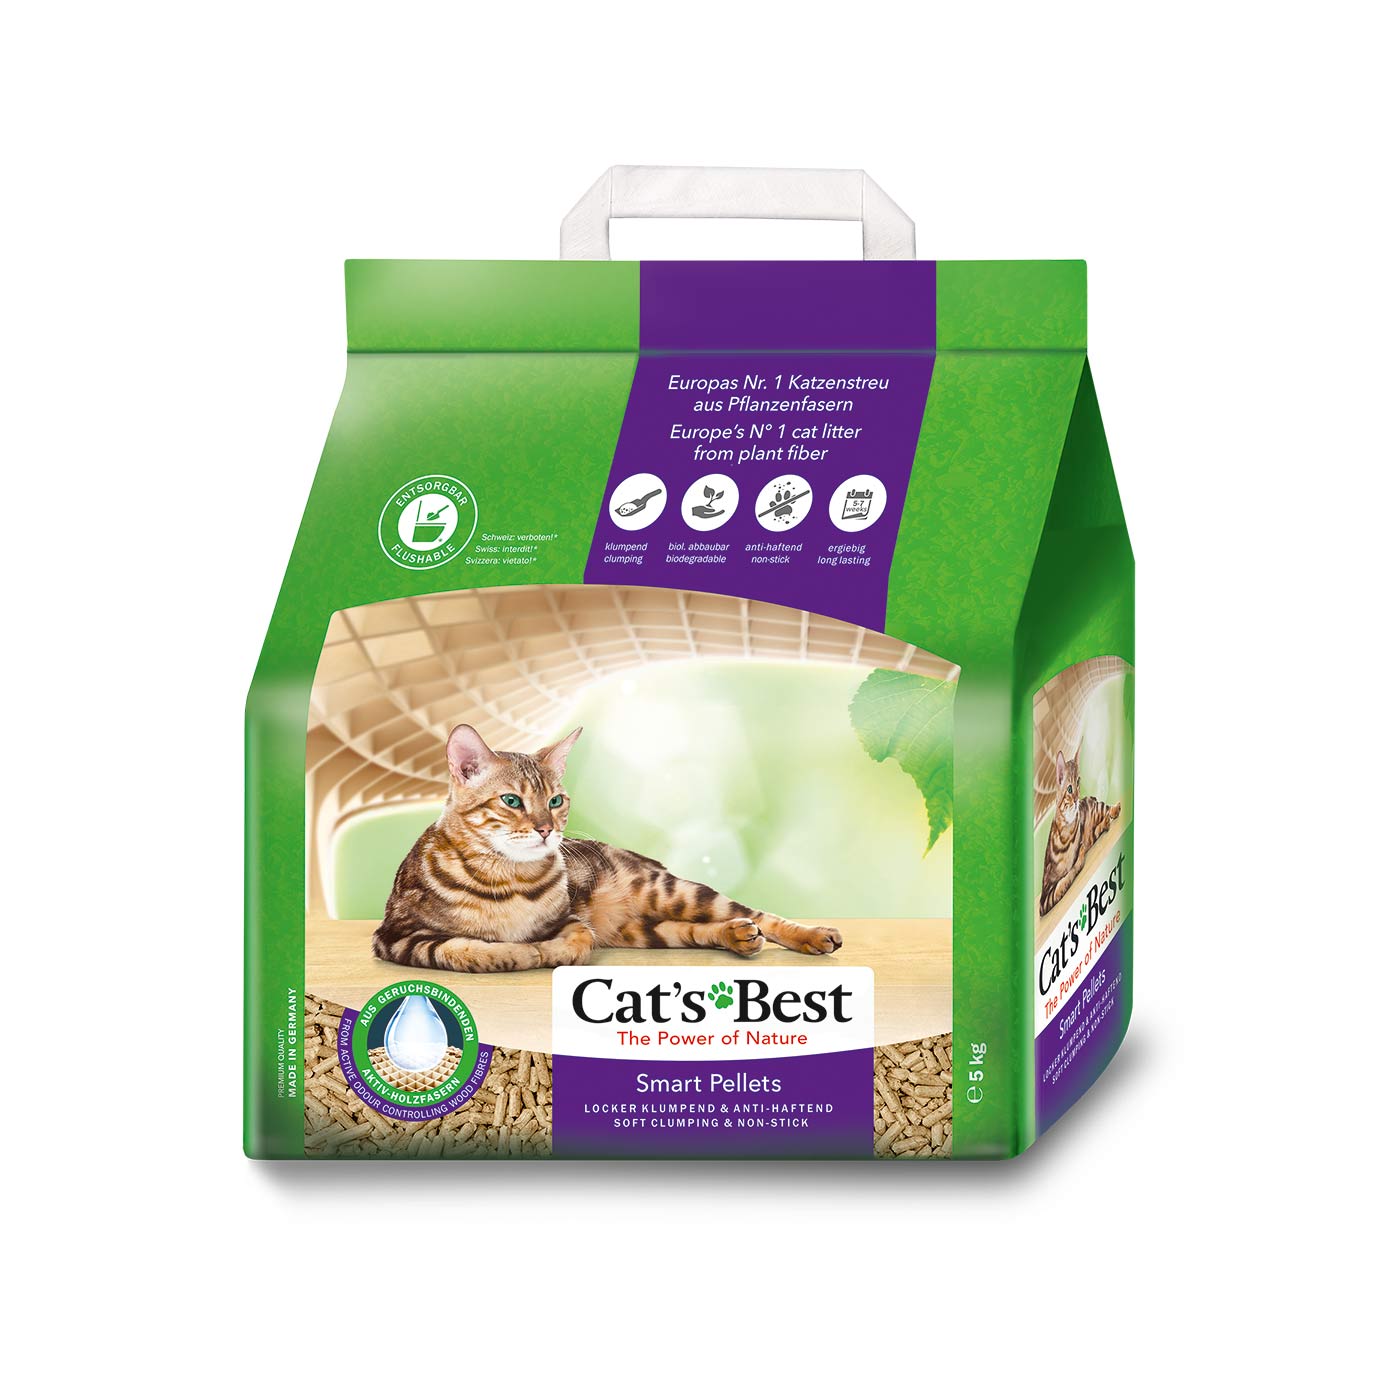 Cats Best Smart Pellets Cat Litter Absolute Pets